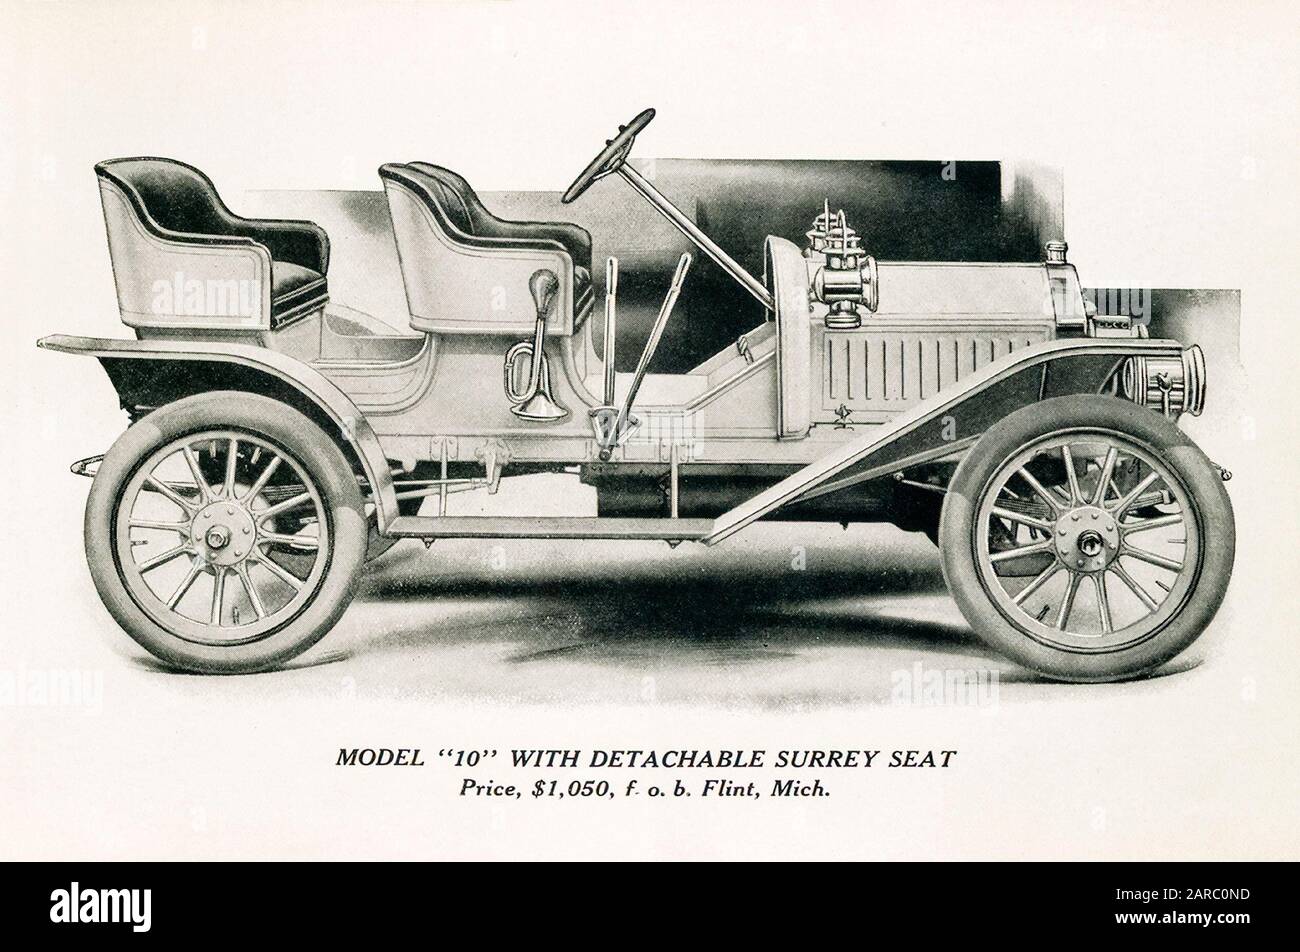 Vintage Car, Buick Modelo 10 con asiento desmontable en Surrey, Precio $1050, ilustración, 1909 Foto de stock